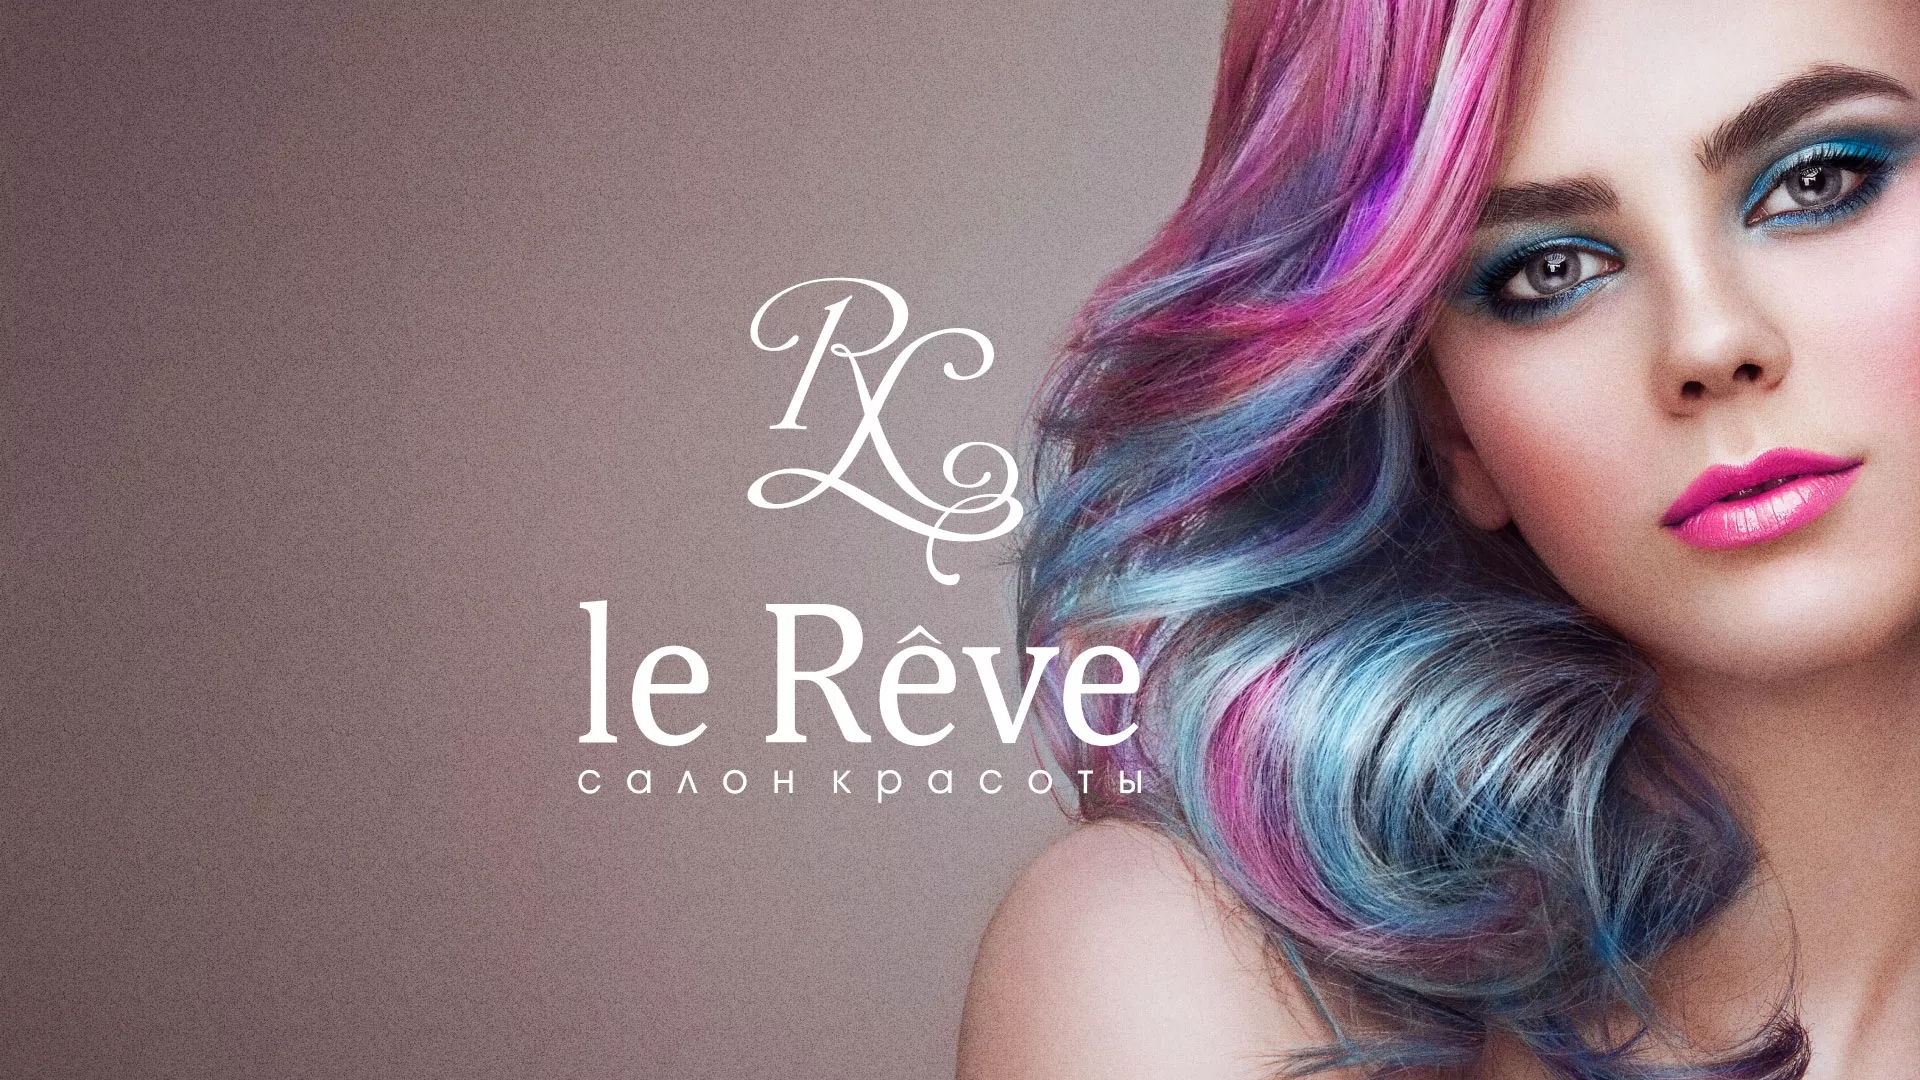 Создание сайта для салона красоты «Le Reve» в Полярных Зорях